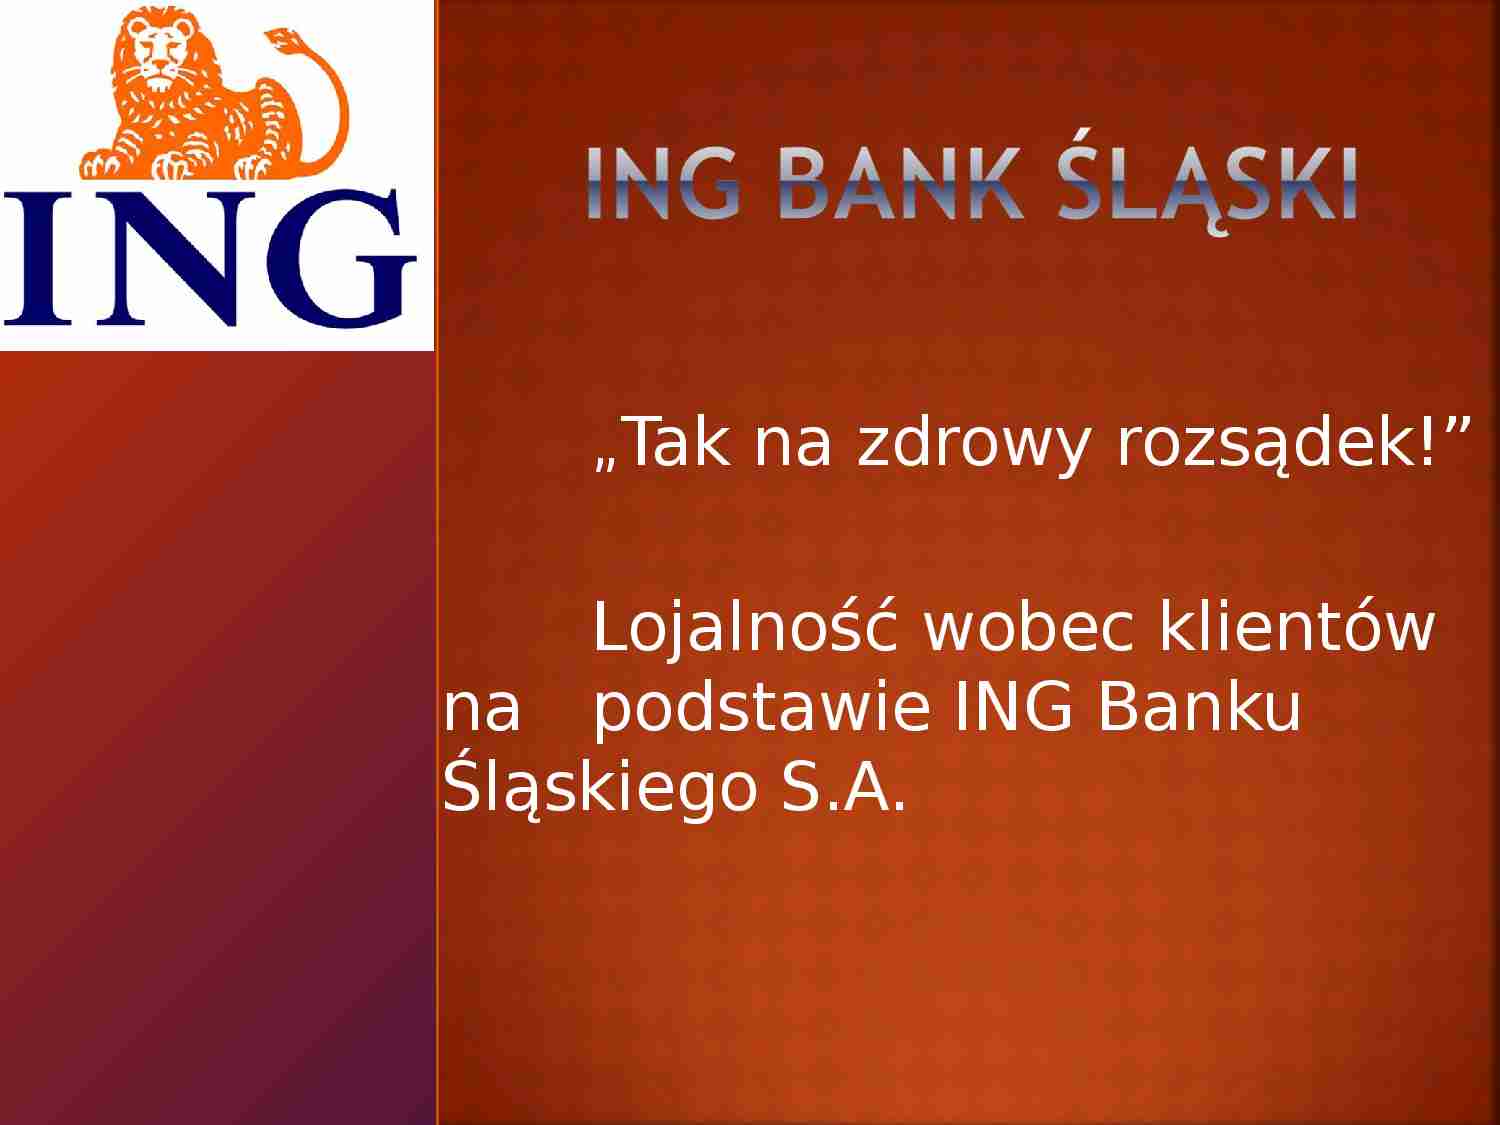  Lojalność wobec klientów na podstawie  ING Banku Śląskiego S.A. - strona 1